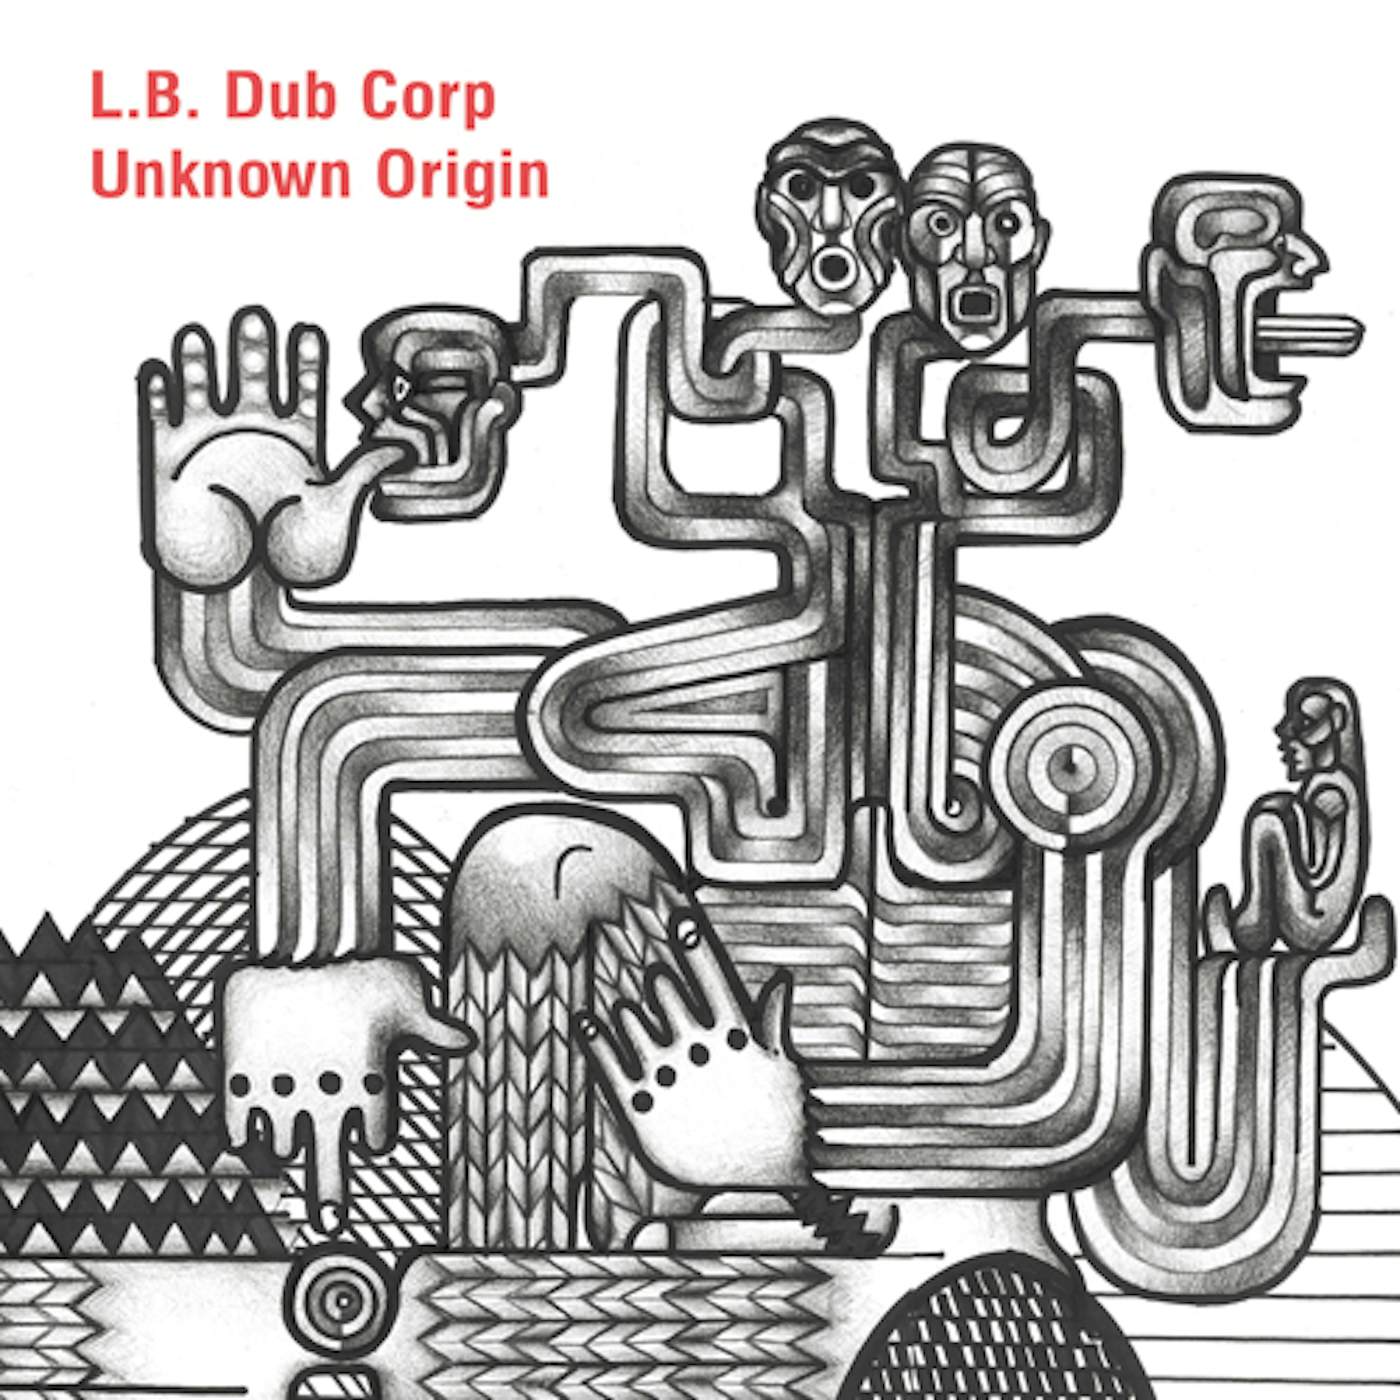 L.B. Dub Corp UNKNOWN ORIGIN CD